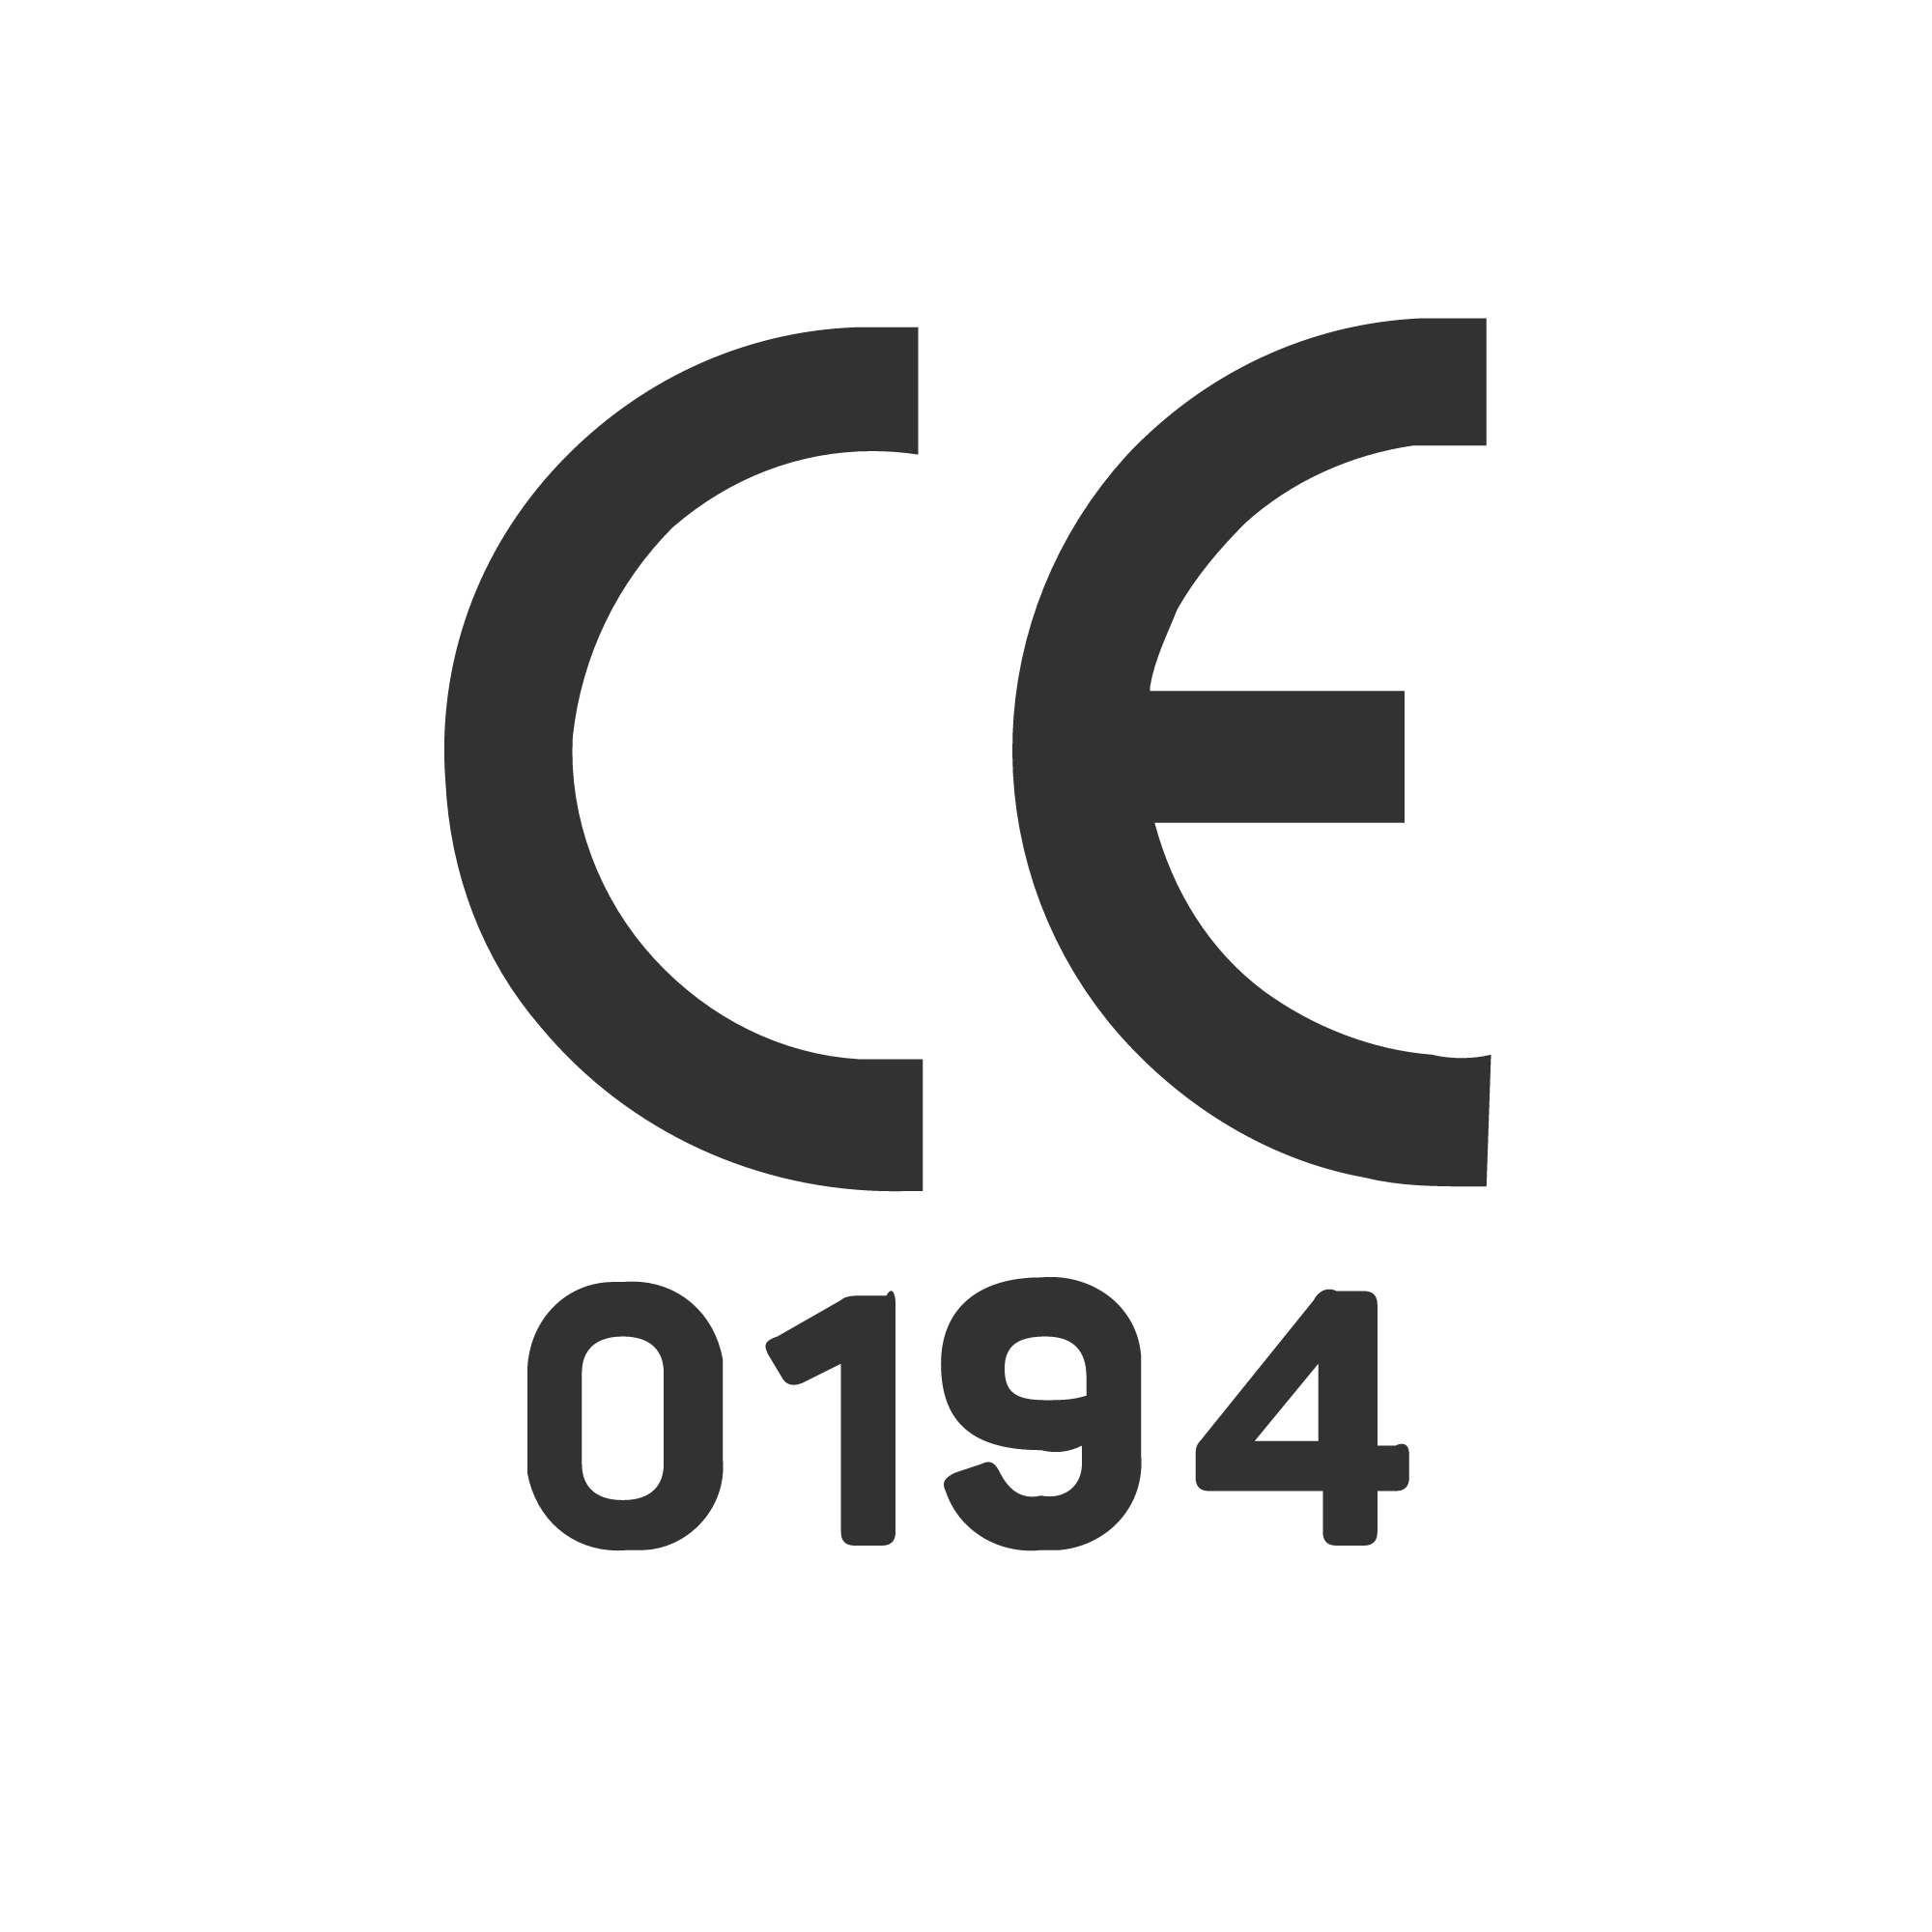 CE 0194